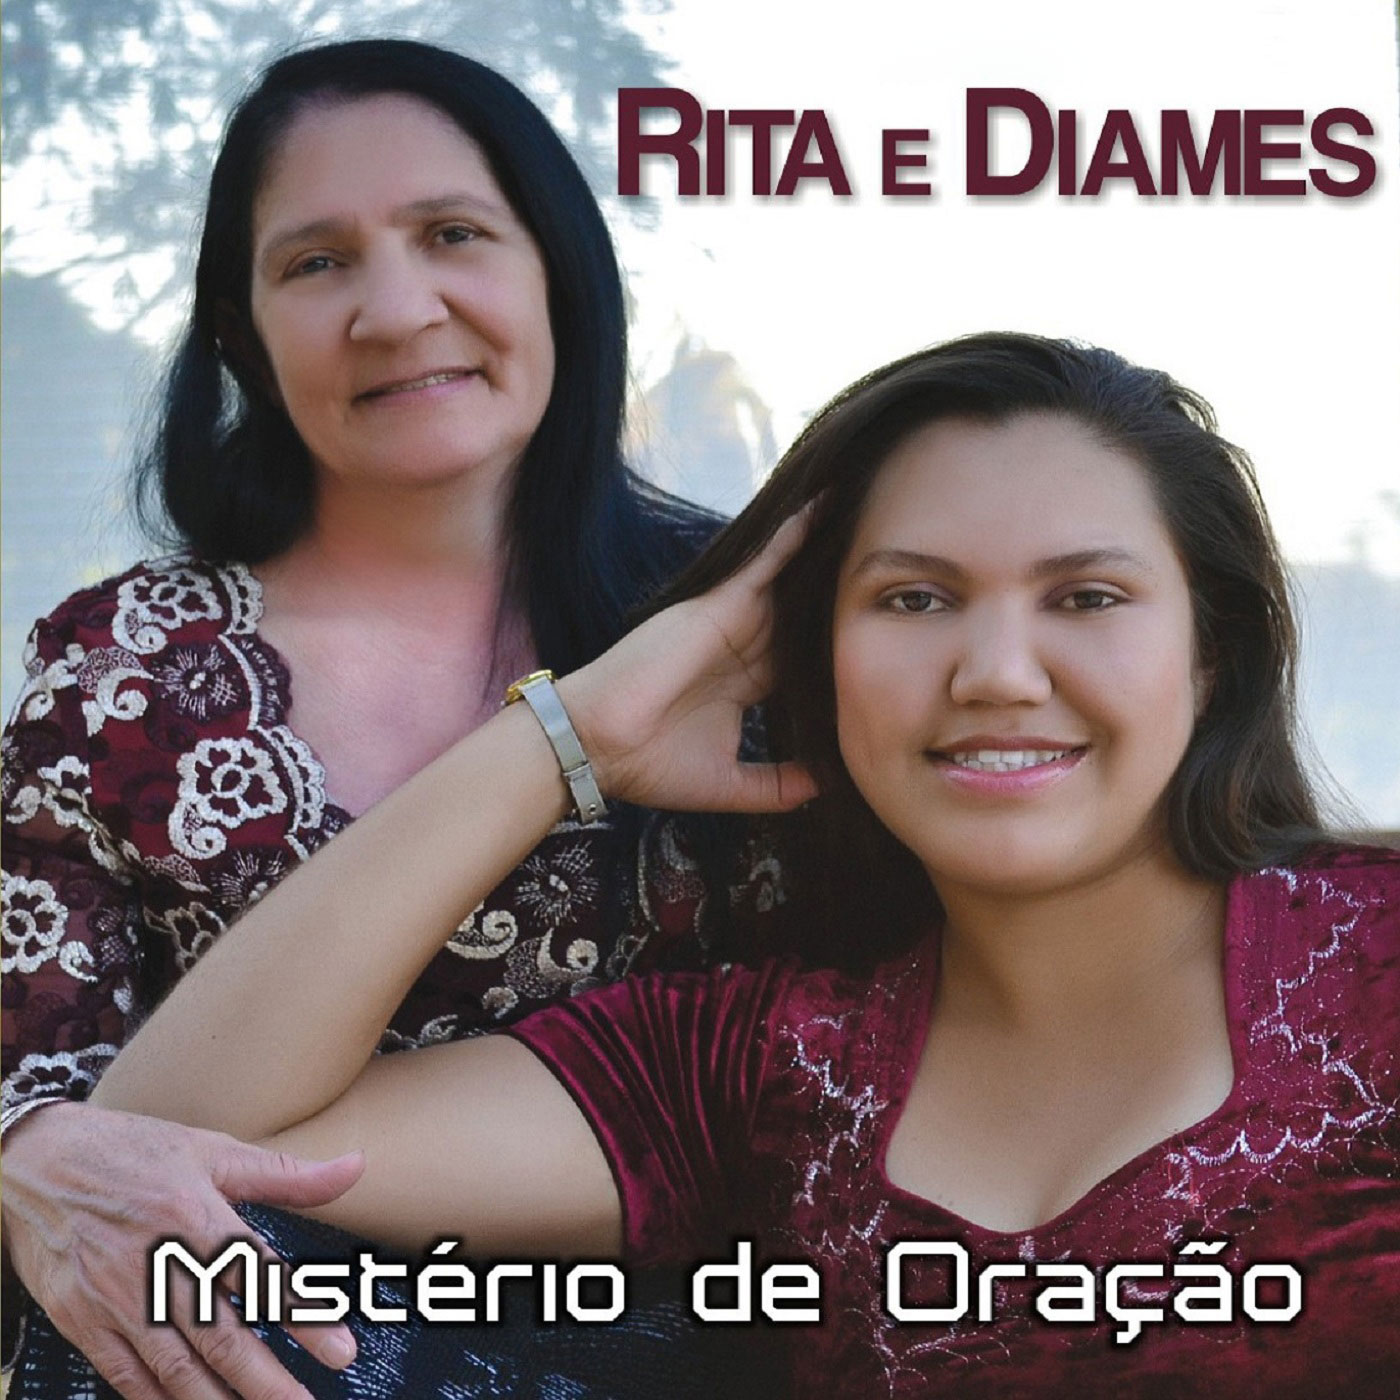 Rita e Diames - Mistério de Oração - Capa